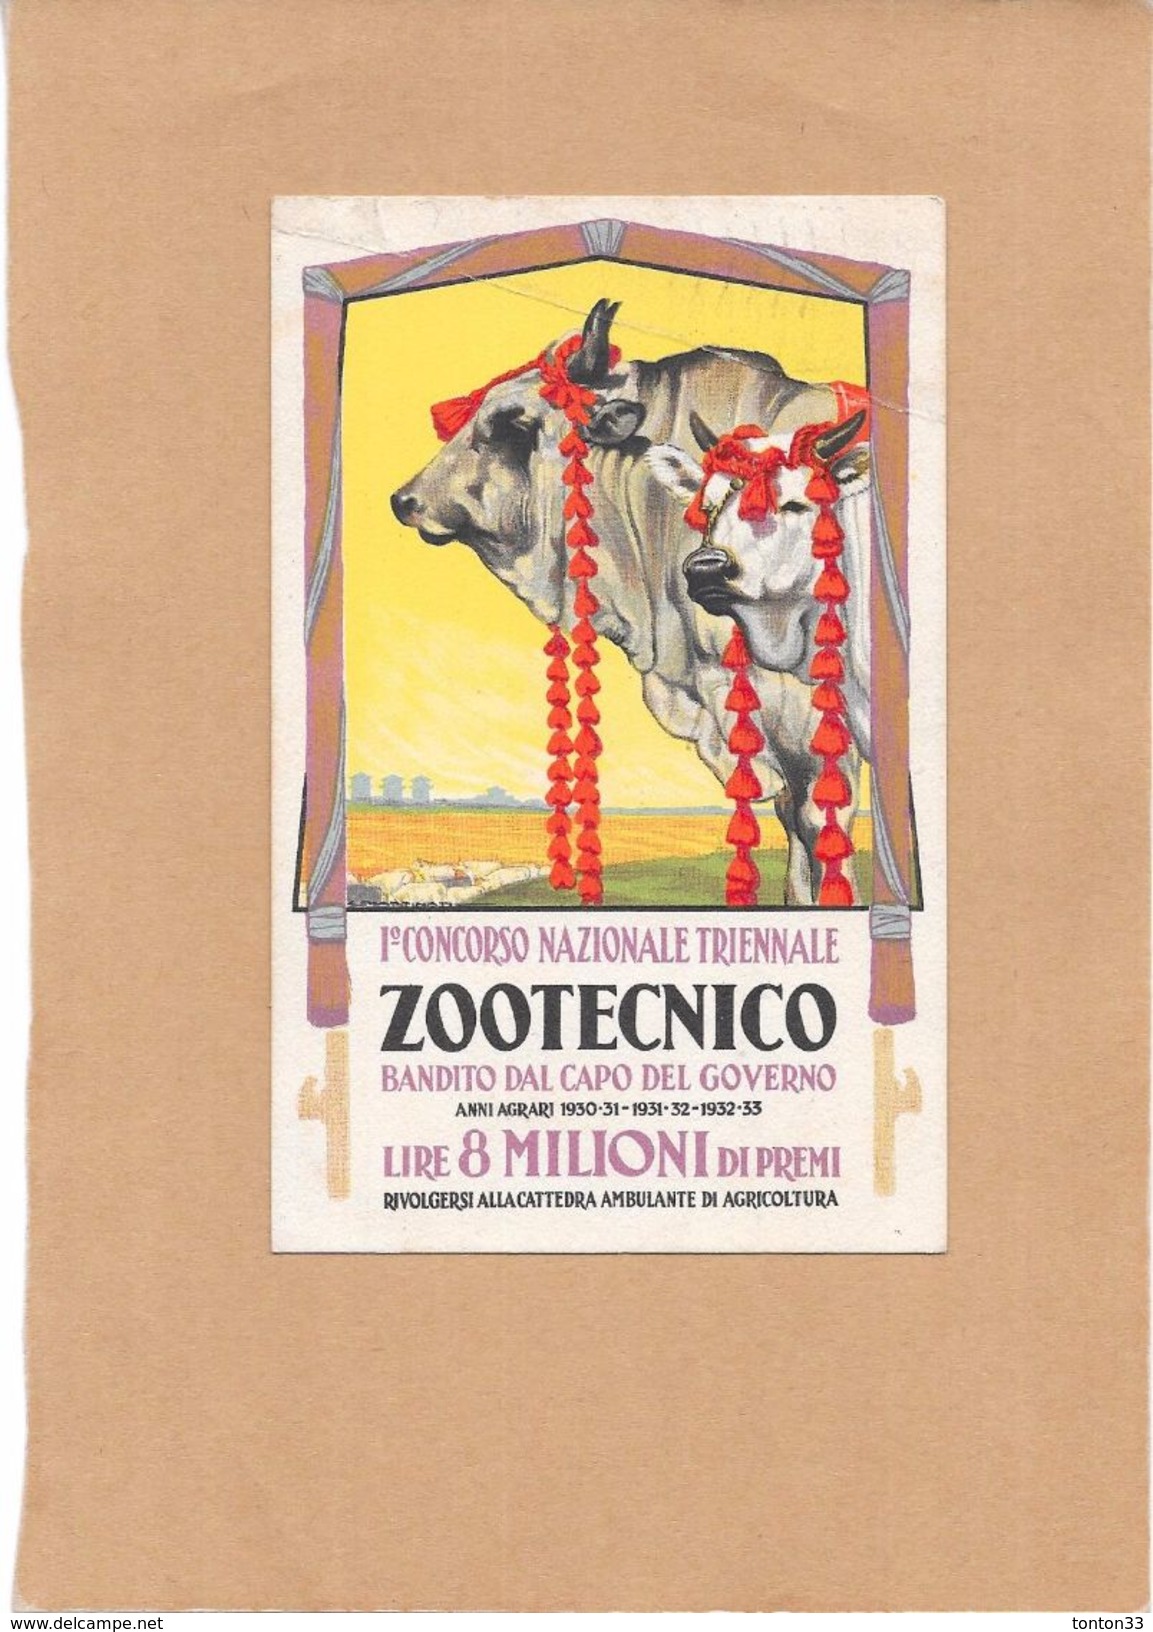 PARIS - 75 - Lois FOUCHER Cartolina Postale - Concorso Nazionale Triennale ZOOTECNICO - ENCH2906/321 - - Petits Métiers à Paris